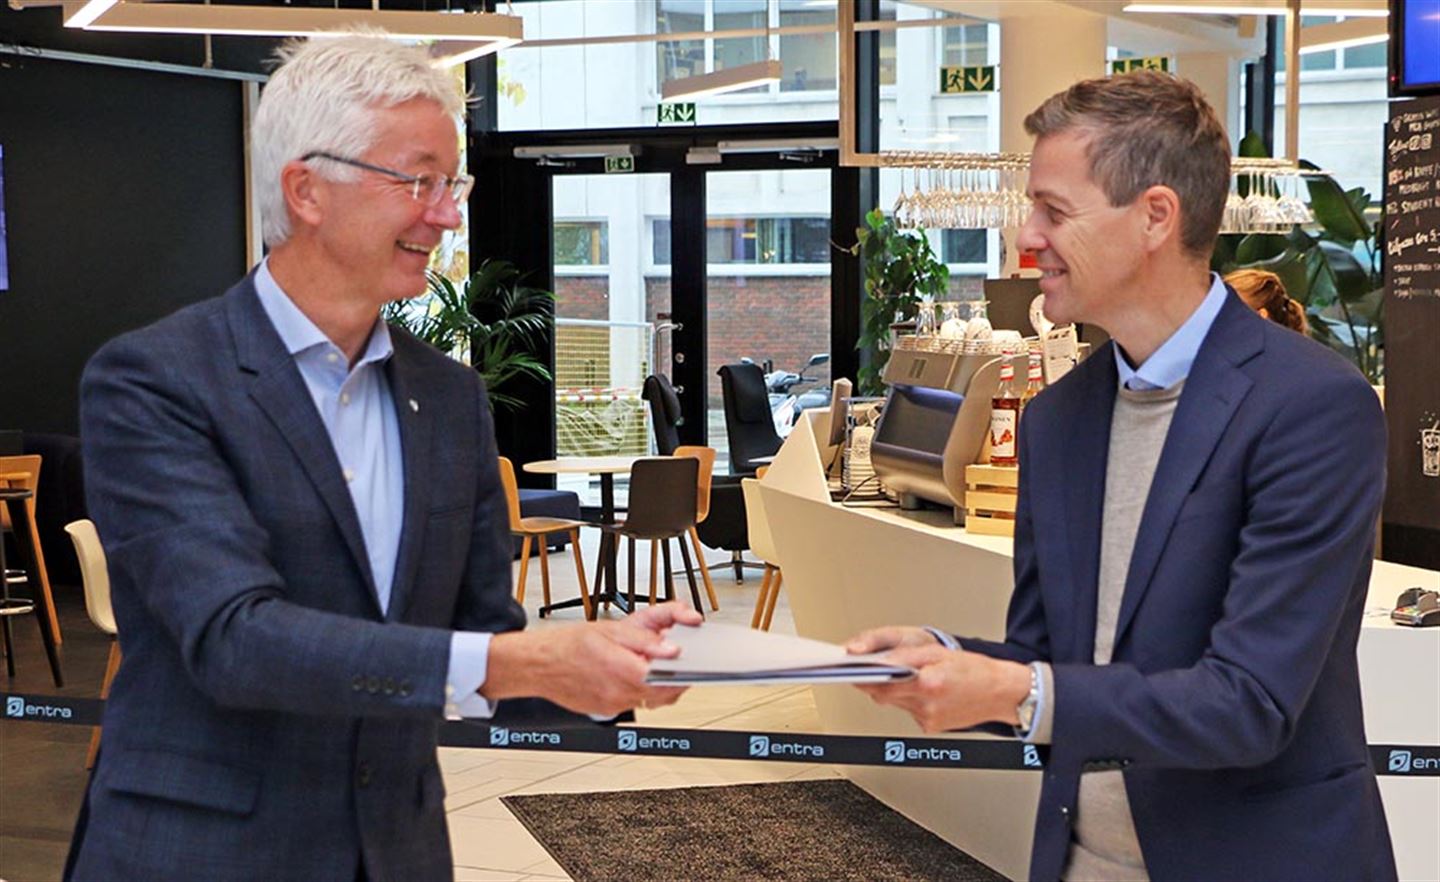 SIGNERTE AVTALEN: Fylkesordførar Jon Askeland og samferdselsminister Knut Arild Hareide med den signerte avtalen om byvekst i bergensområdet.